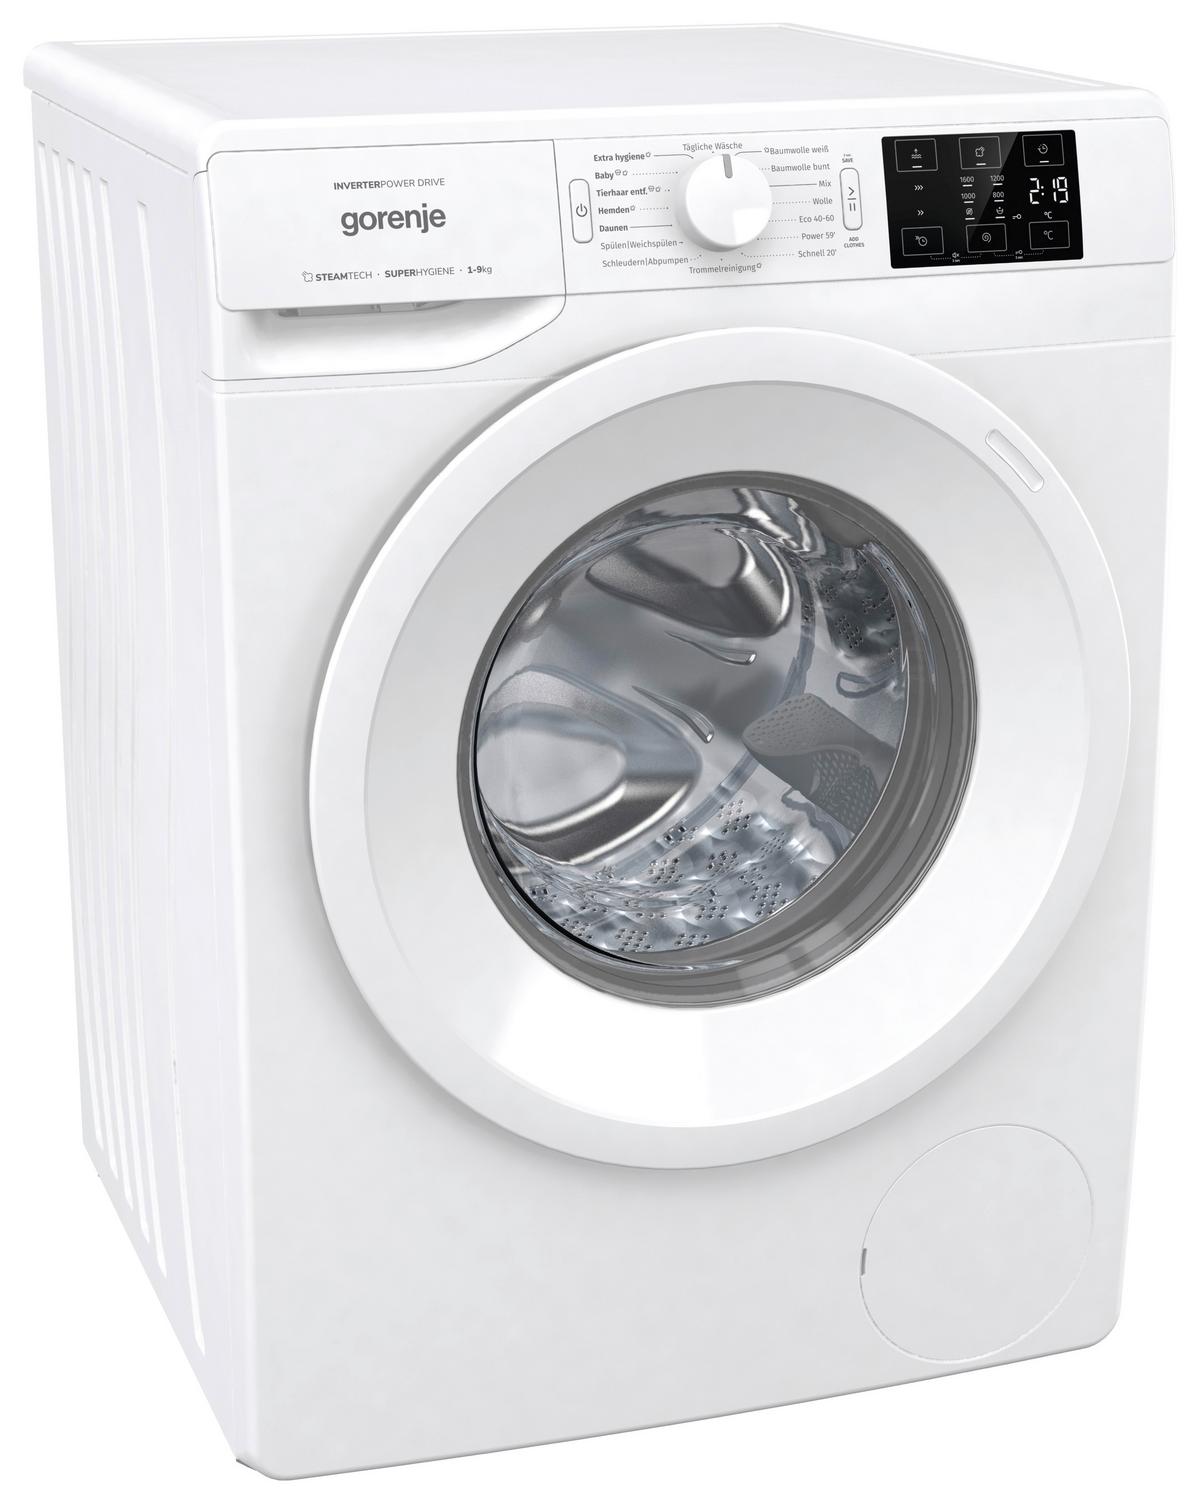 WNEI96ADPS kaufen » Waschmaschine online